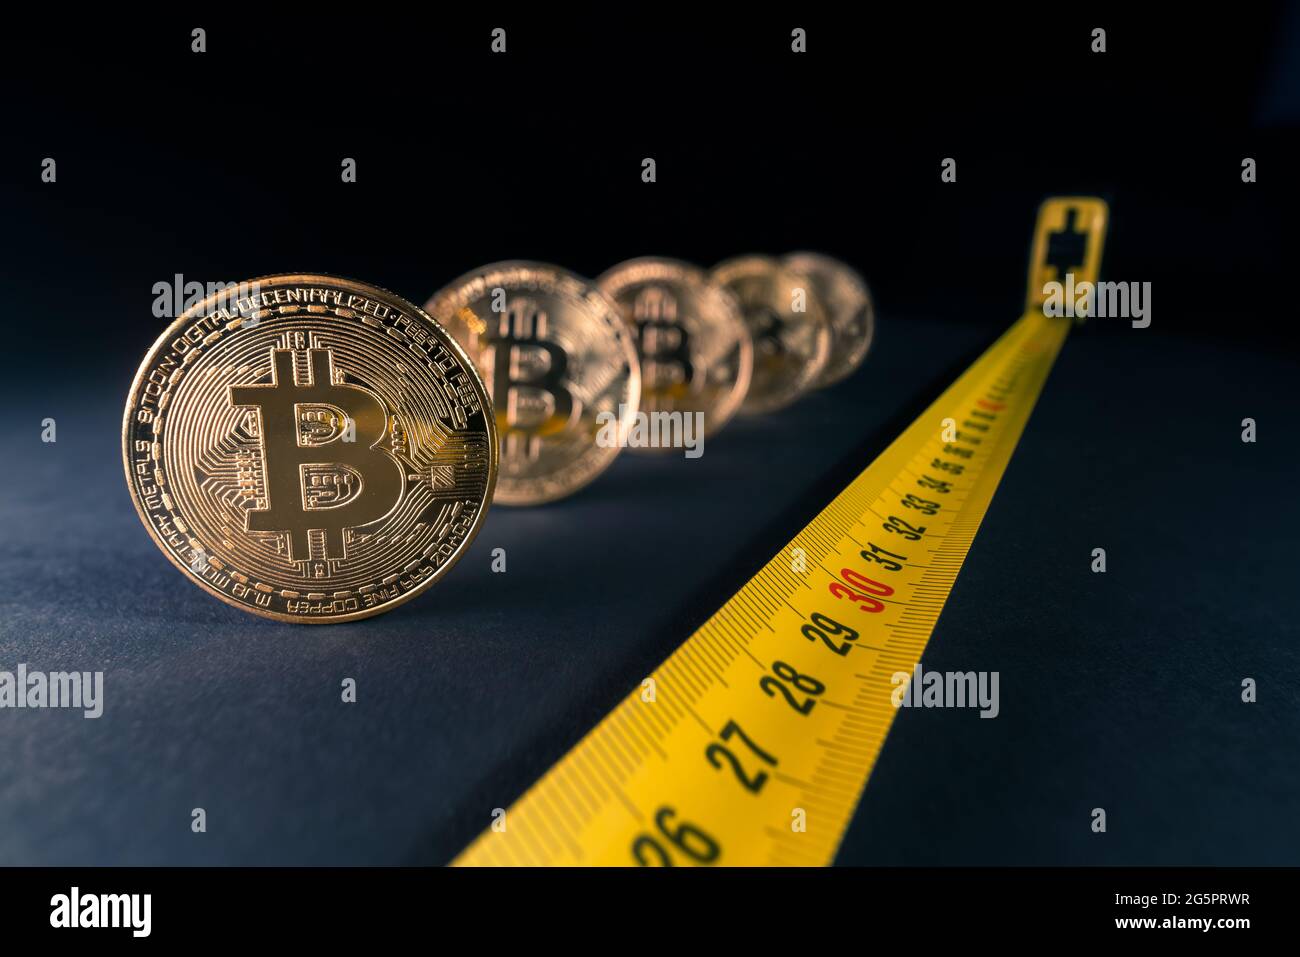 Konzept für Bitcoin-Krise, Preisschwankungen, Bitcoin-Preis sinkt auf 30 Tausend Dollar. Goldene Bitcoins mit einem Maßband daneben w Stockfoto